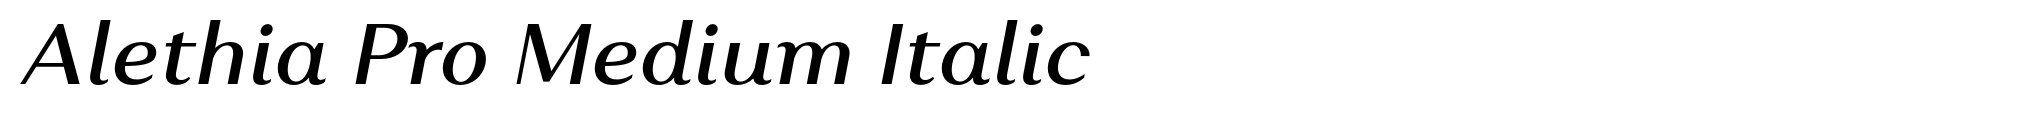 Alethia Pro Medium Italic image